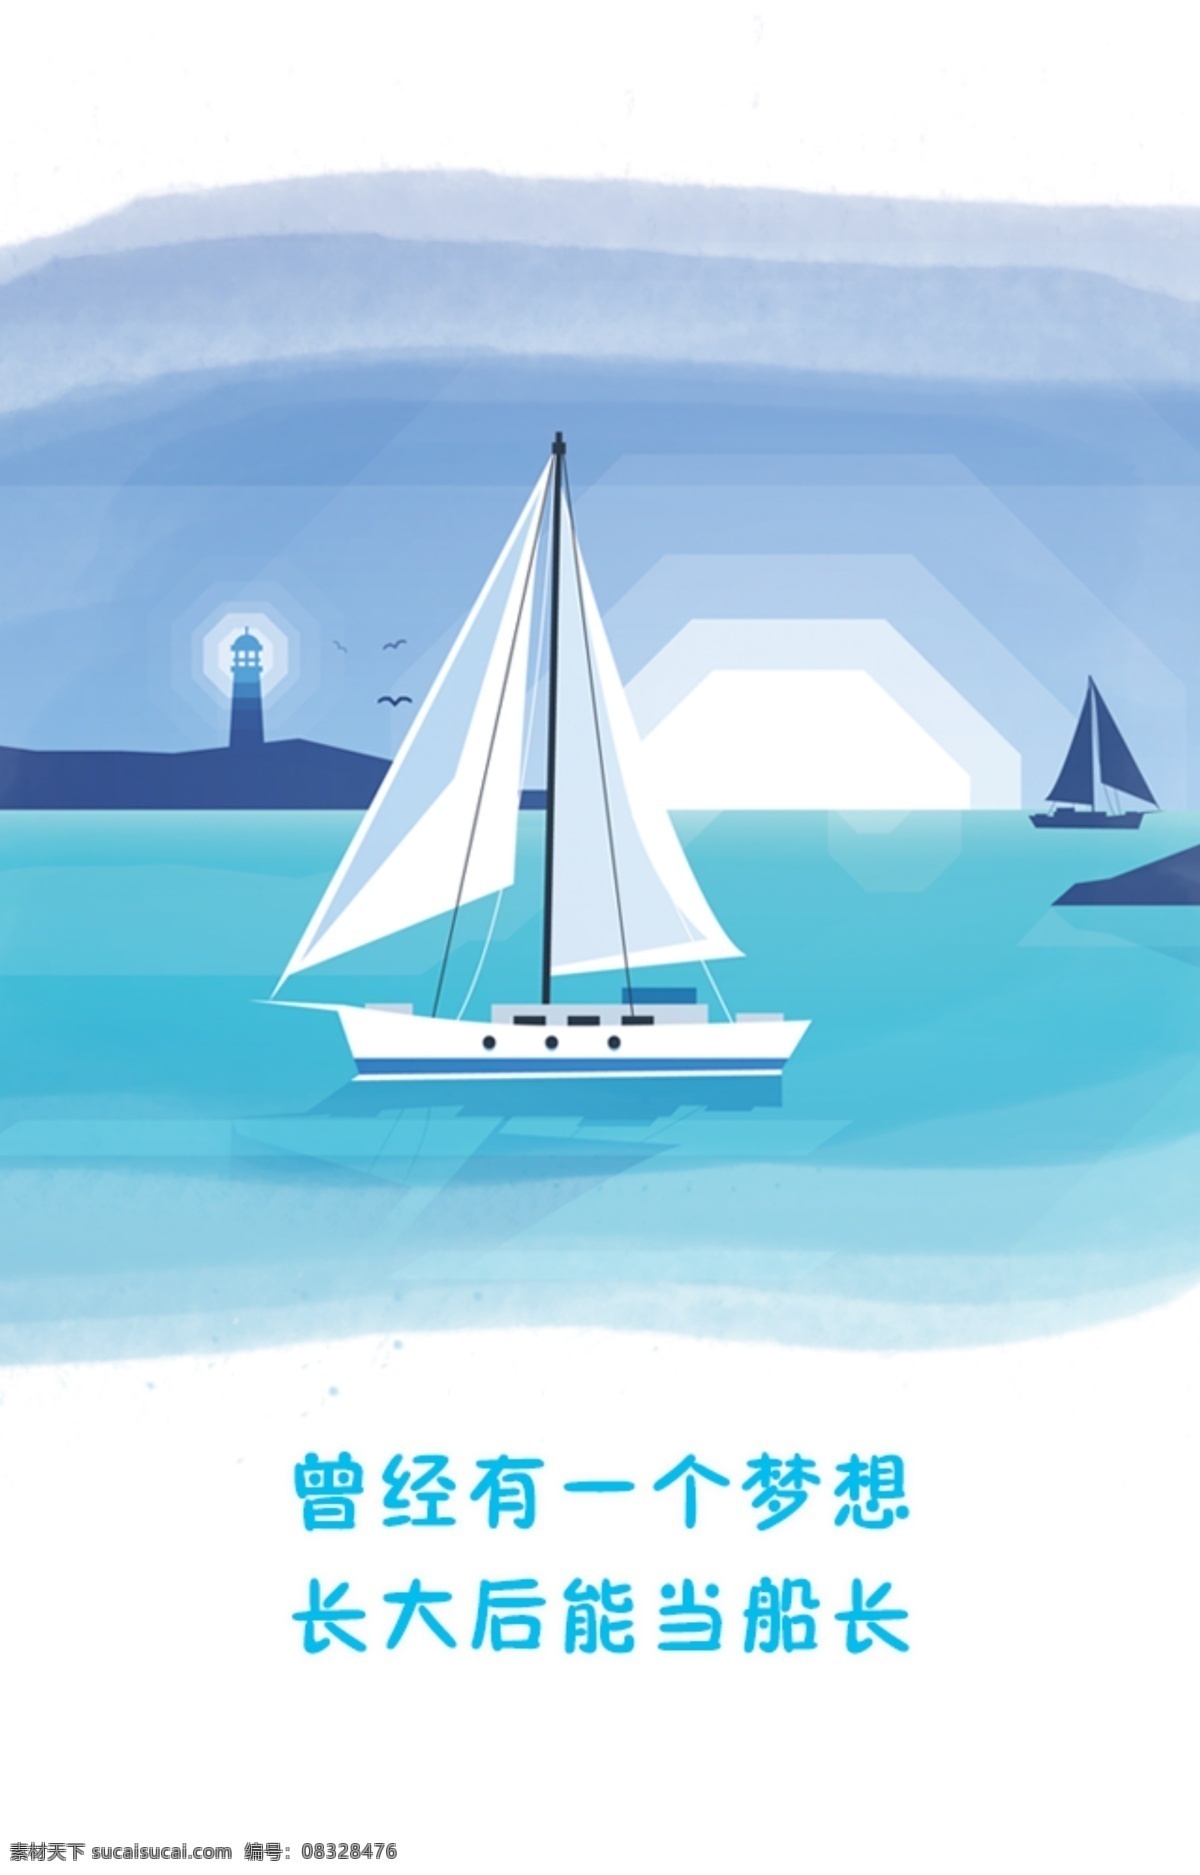 帆船 船 海报 画册 梦想 船舵 船长 船的素材 背景 插图 白色